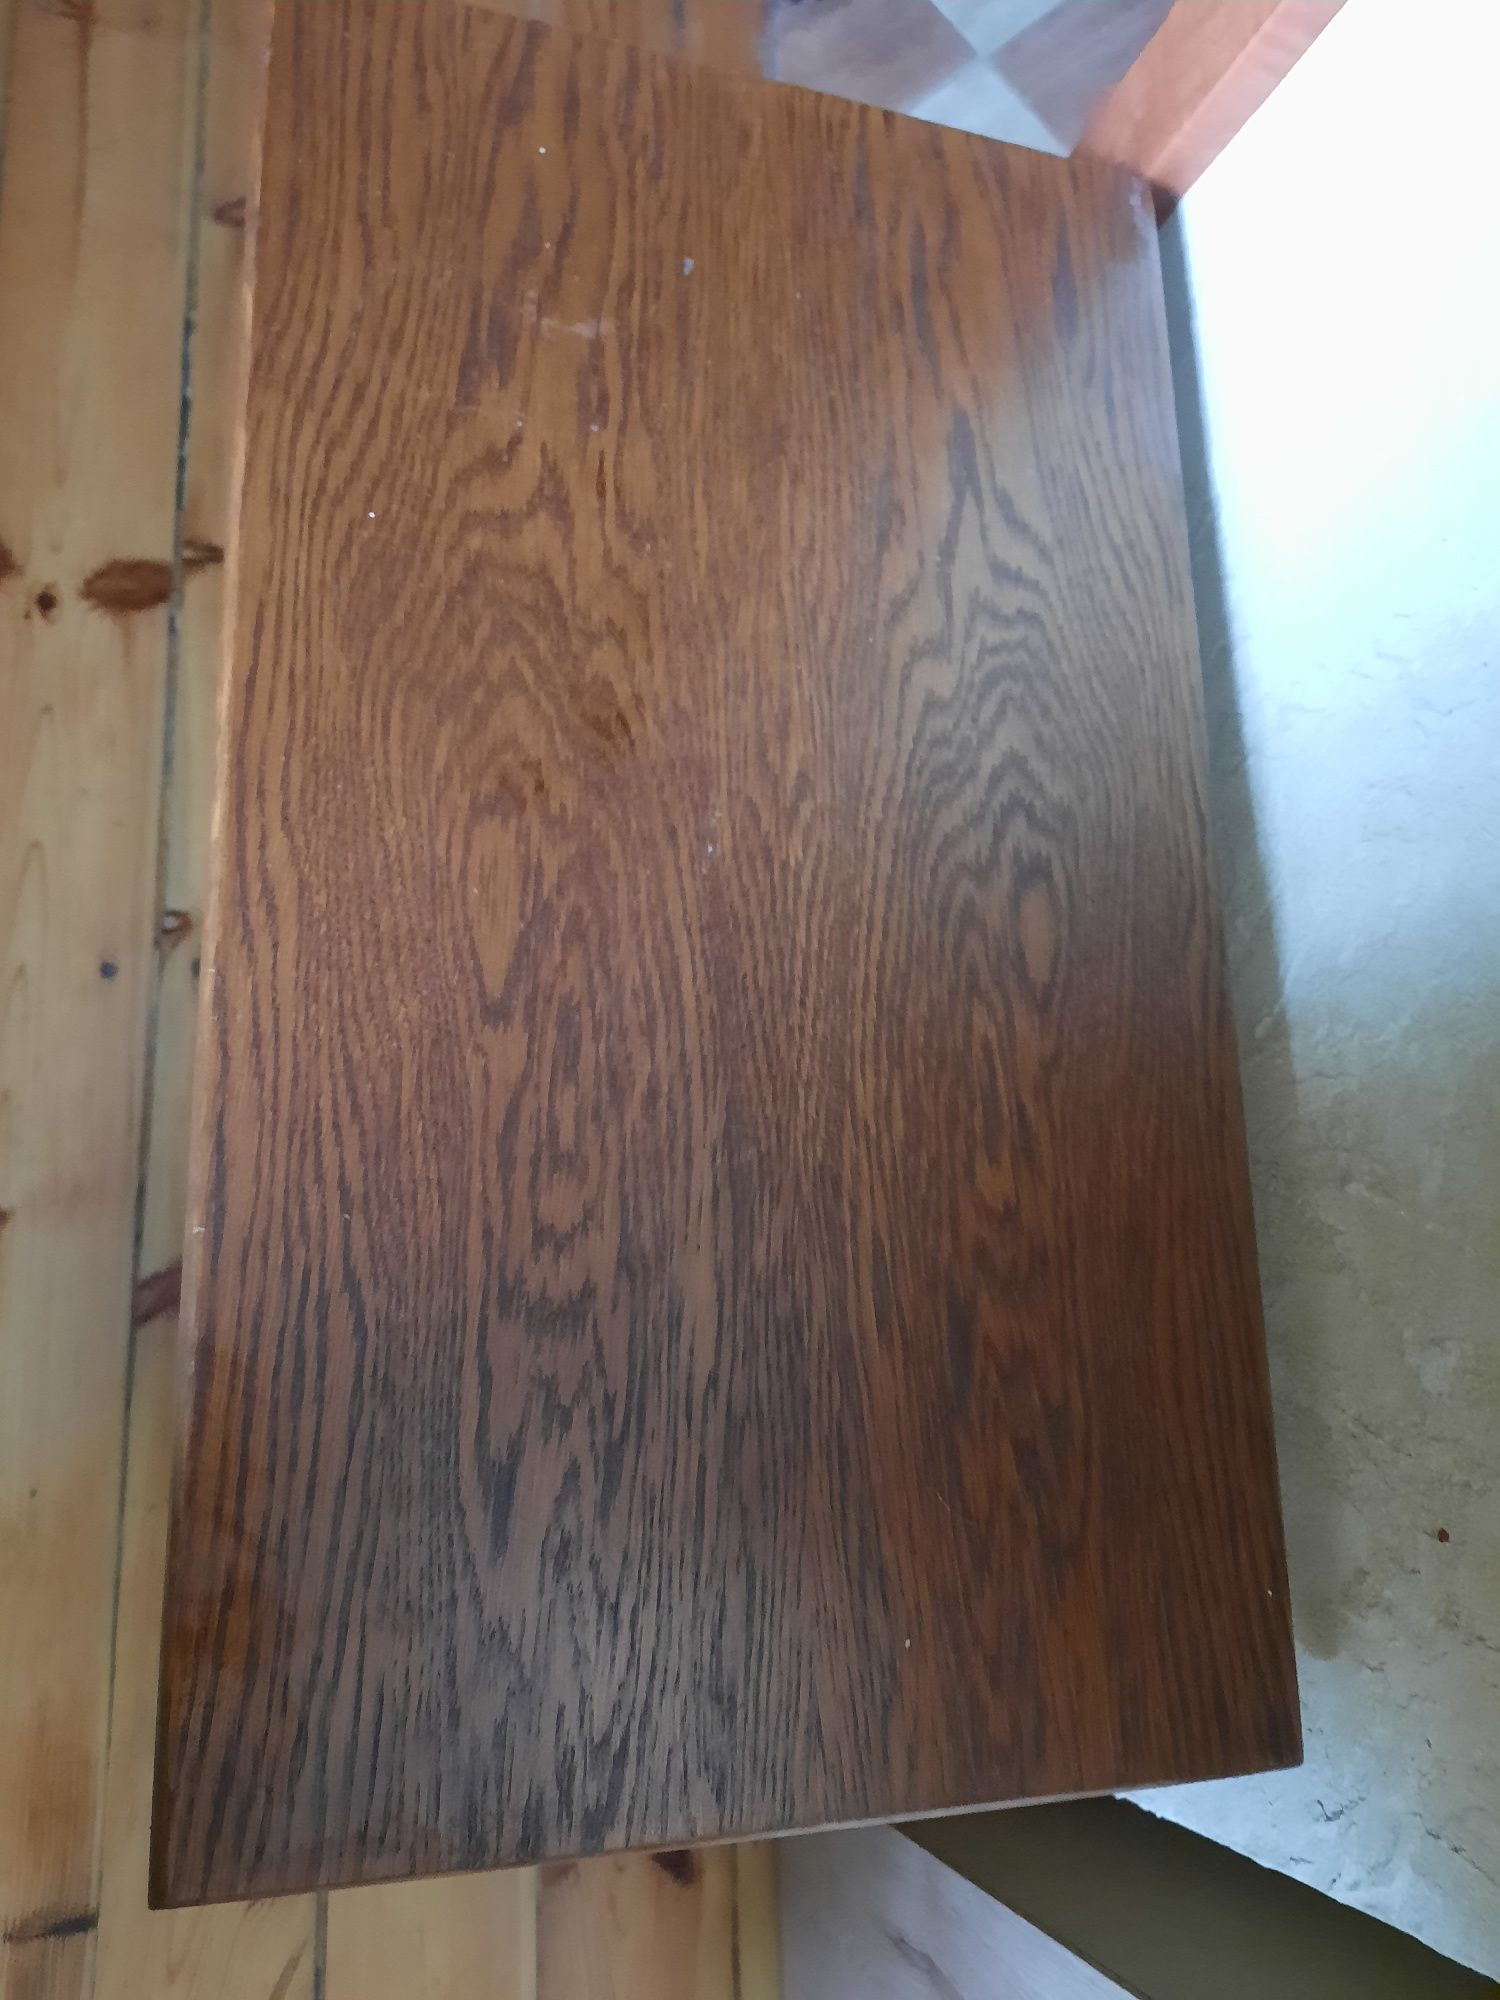 Drewniany stolik pod telewizor